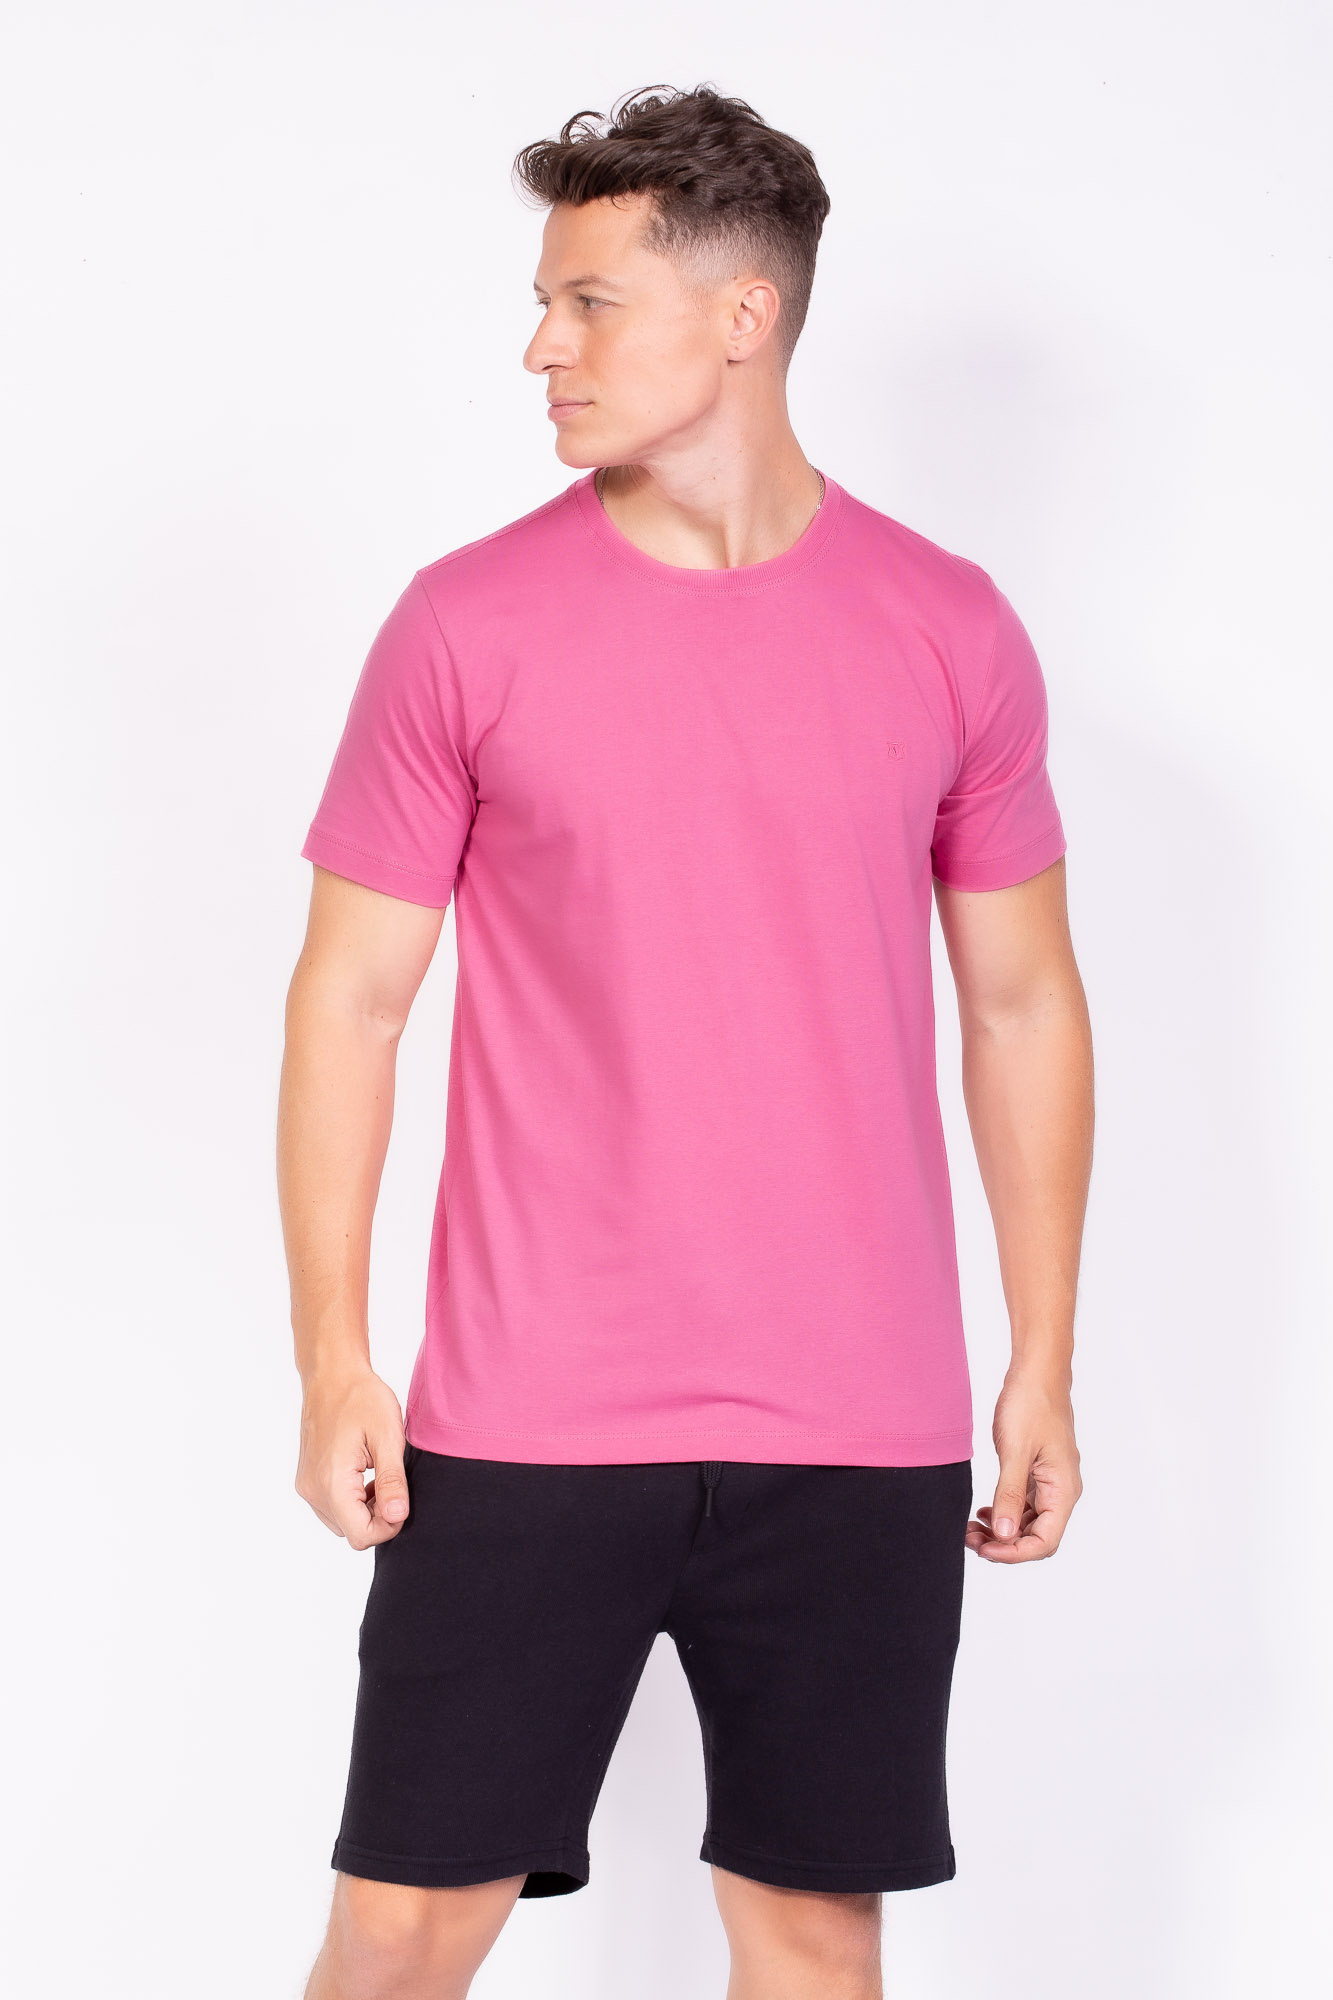 Camiseta Básica 100% algodão rosa chiclete